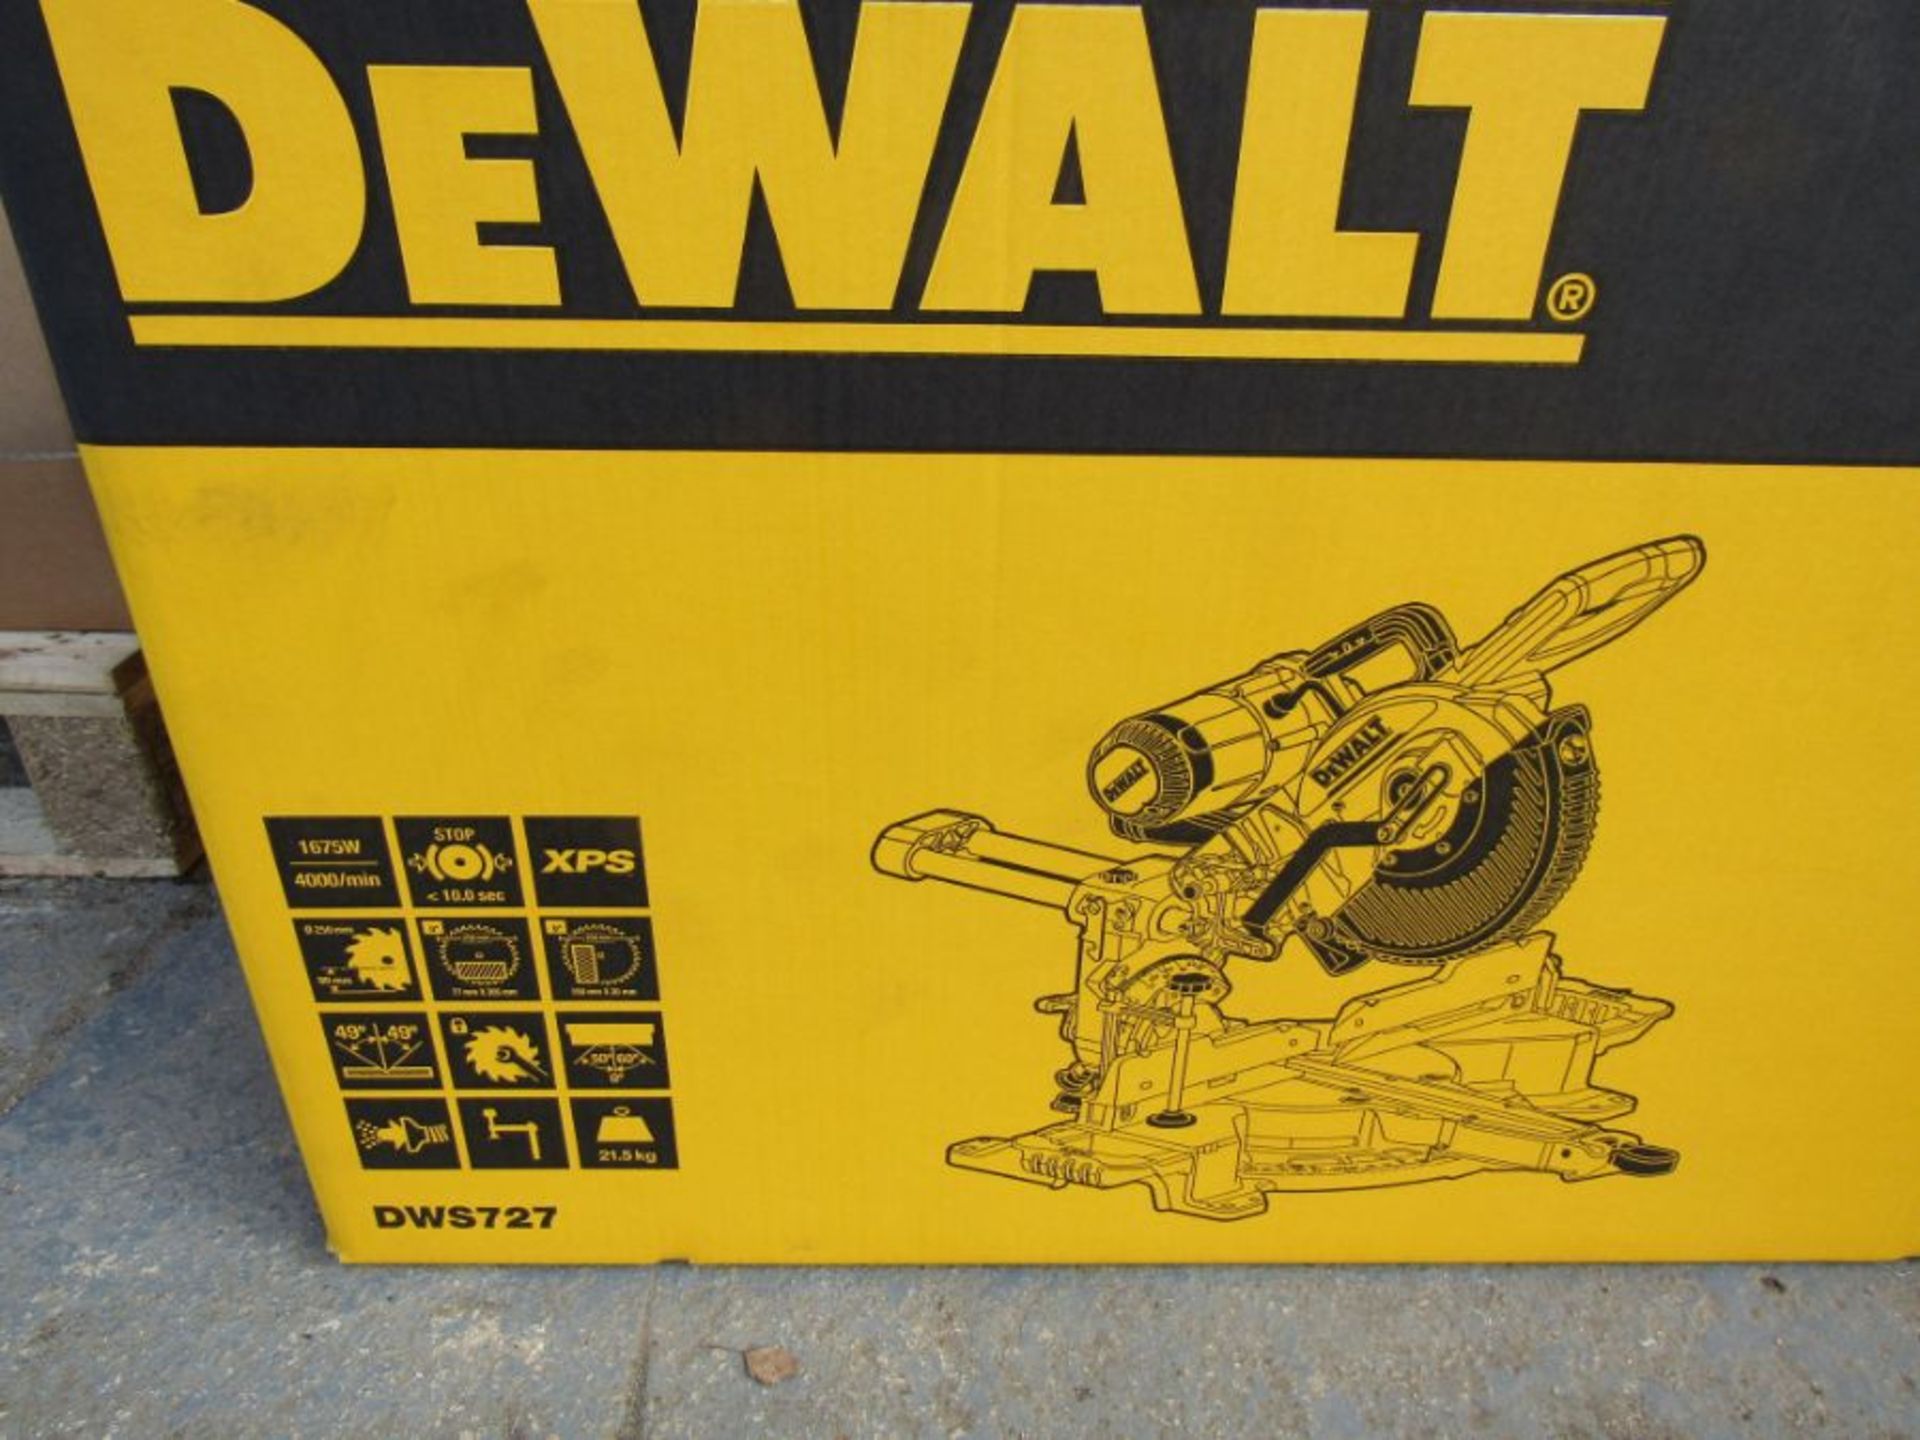 Dewalt DWS727-GB 250mm Double Bevel Sliding Mitre Saw 240v Uk Plug Blkfr 1929440 - Image 3 of 4